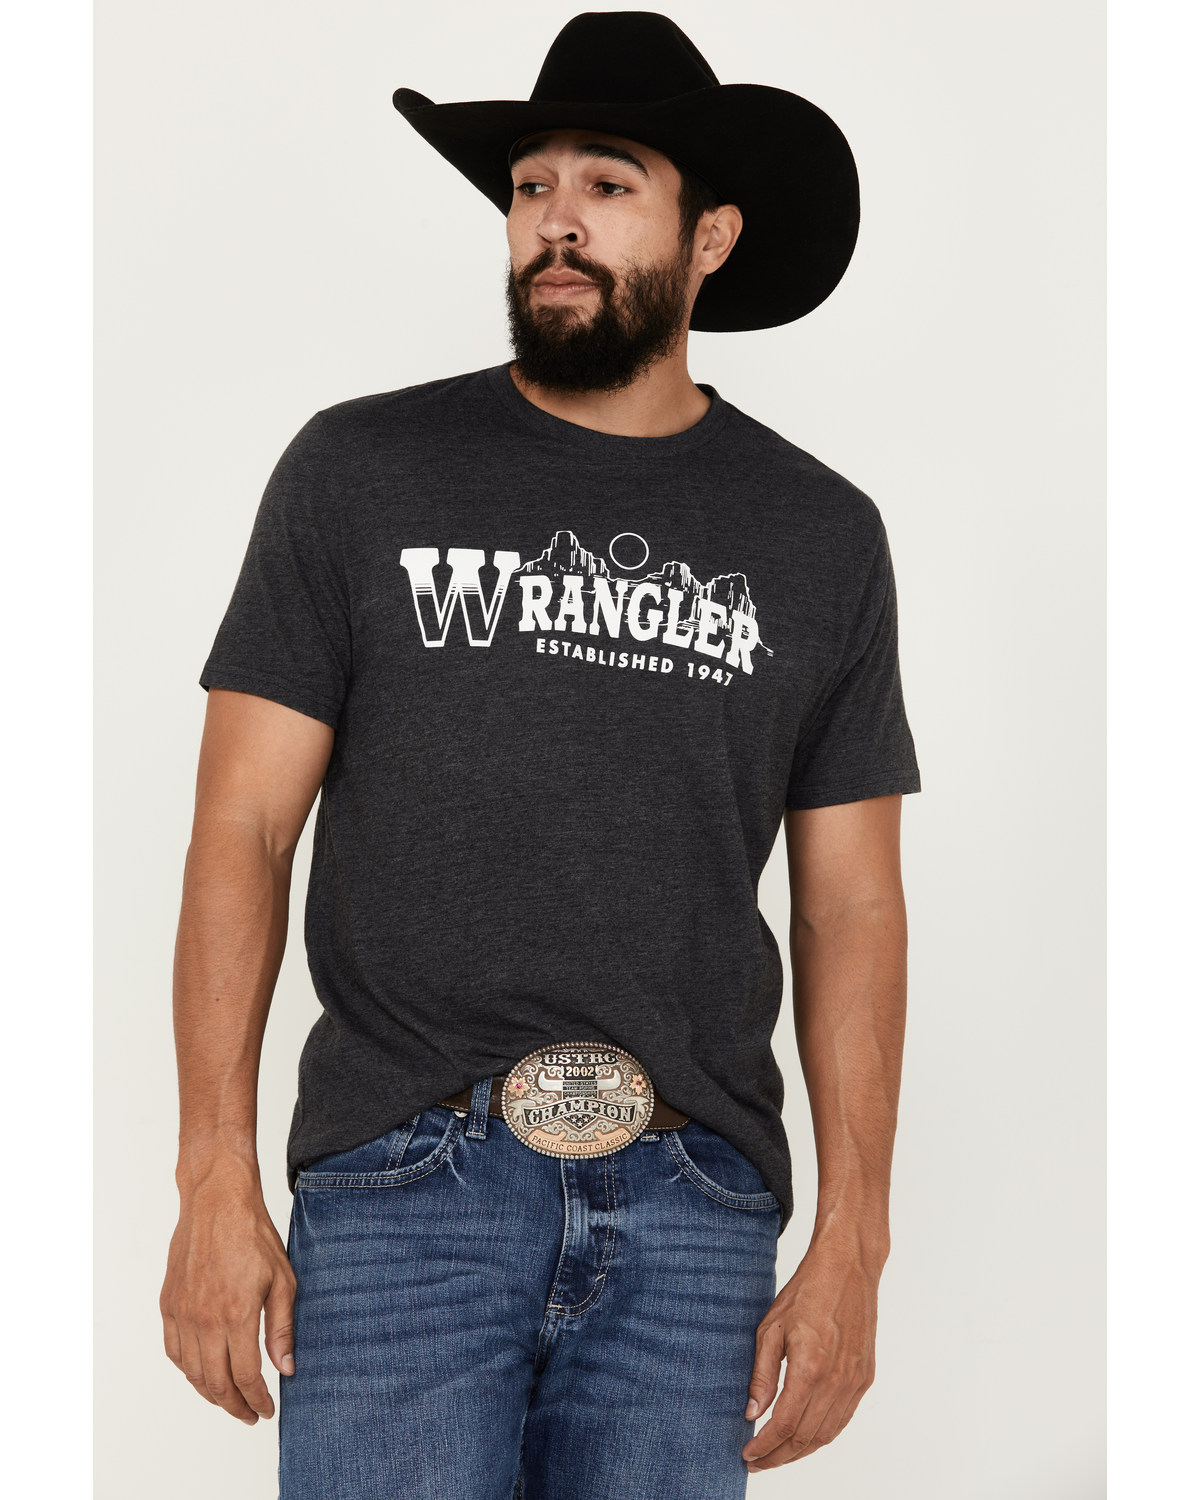 Wrangler Men's Logo Short Sleeve Graphic T-Shirt